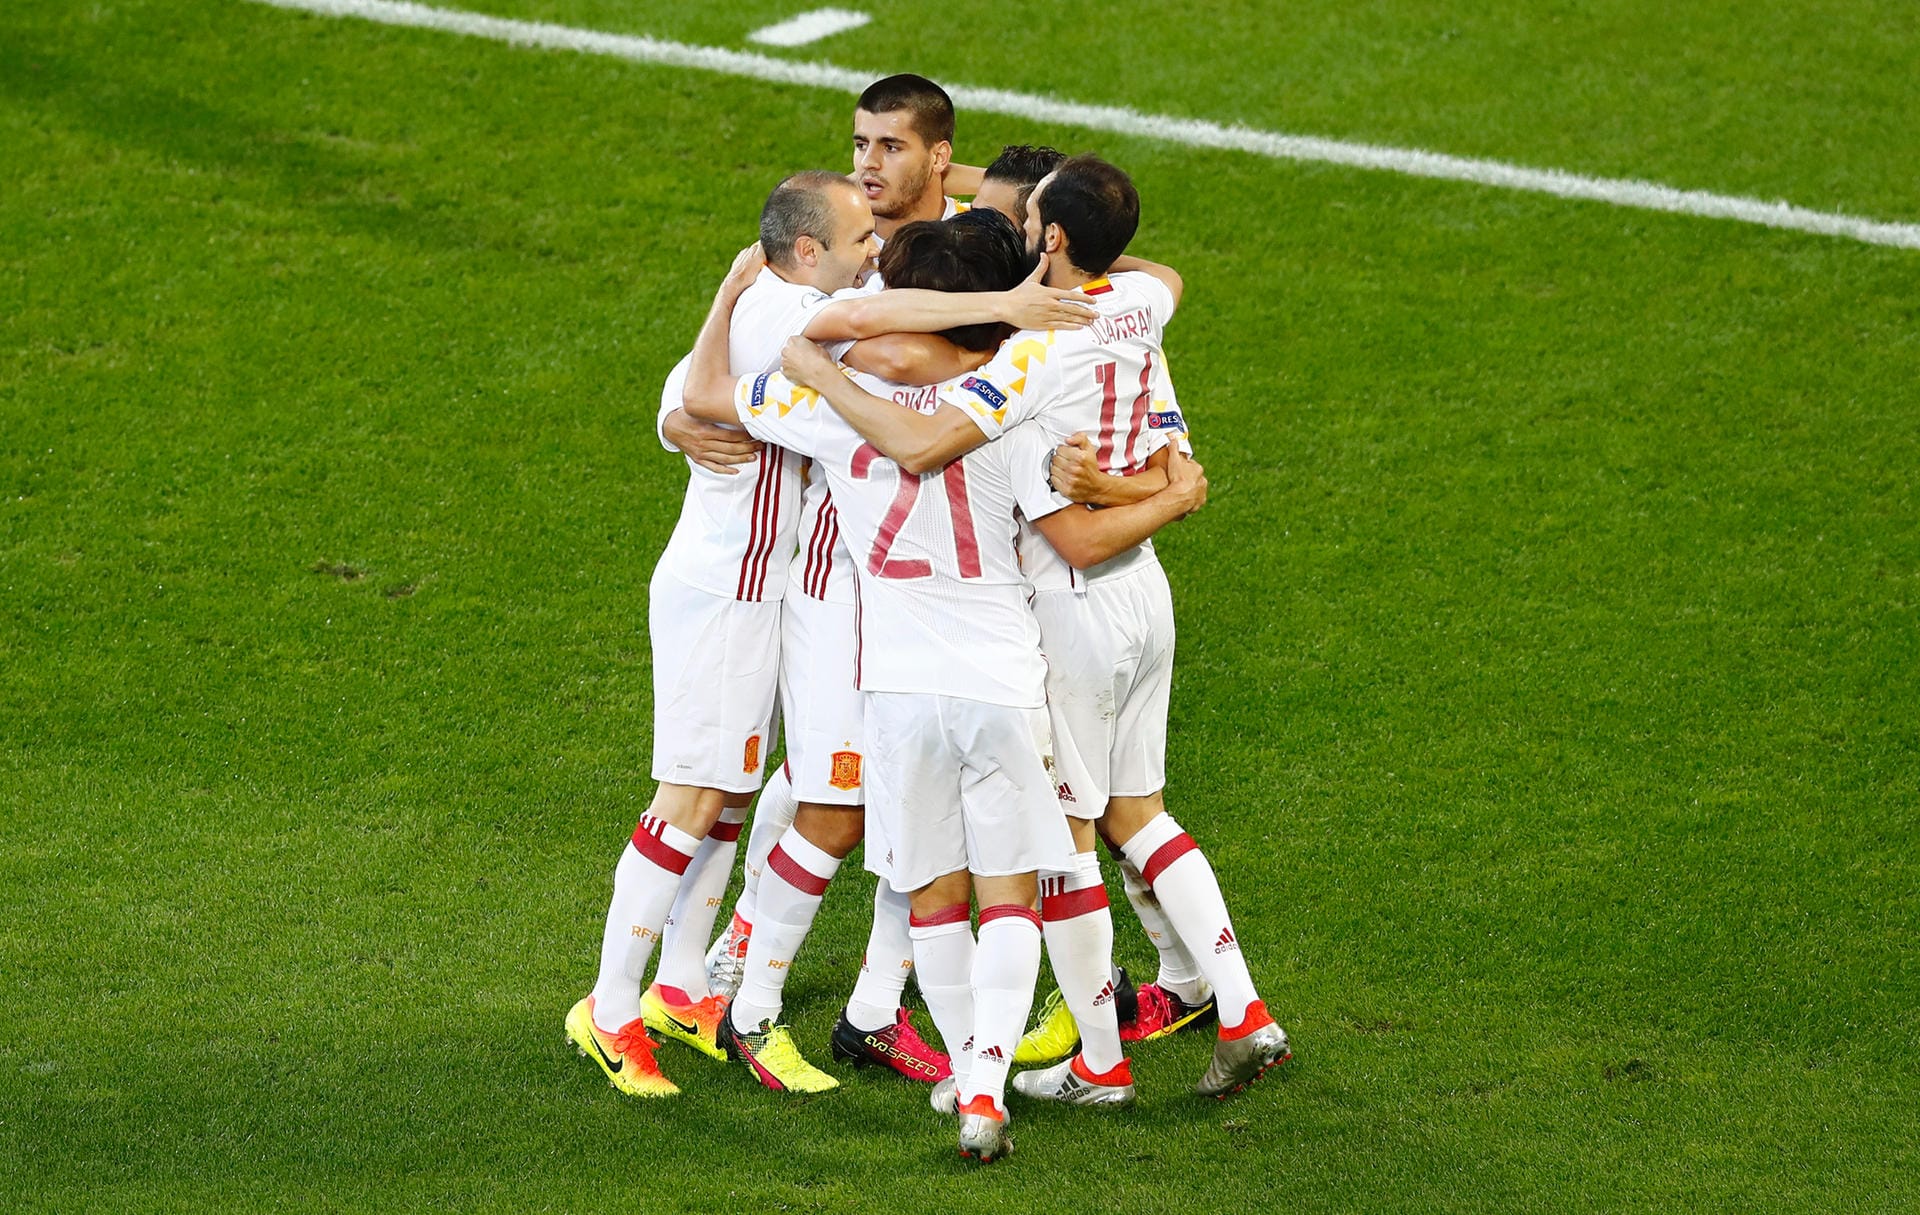 Der Titelverteidiger trifft früh: Morata mit dem 1:0 für Spanien in der siebten Minute.